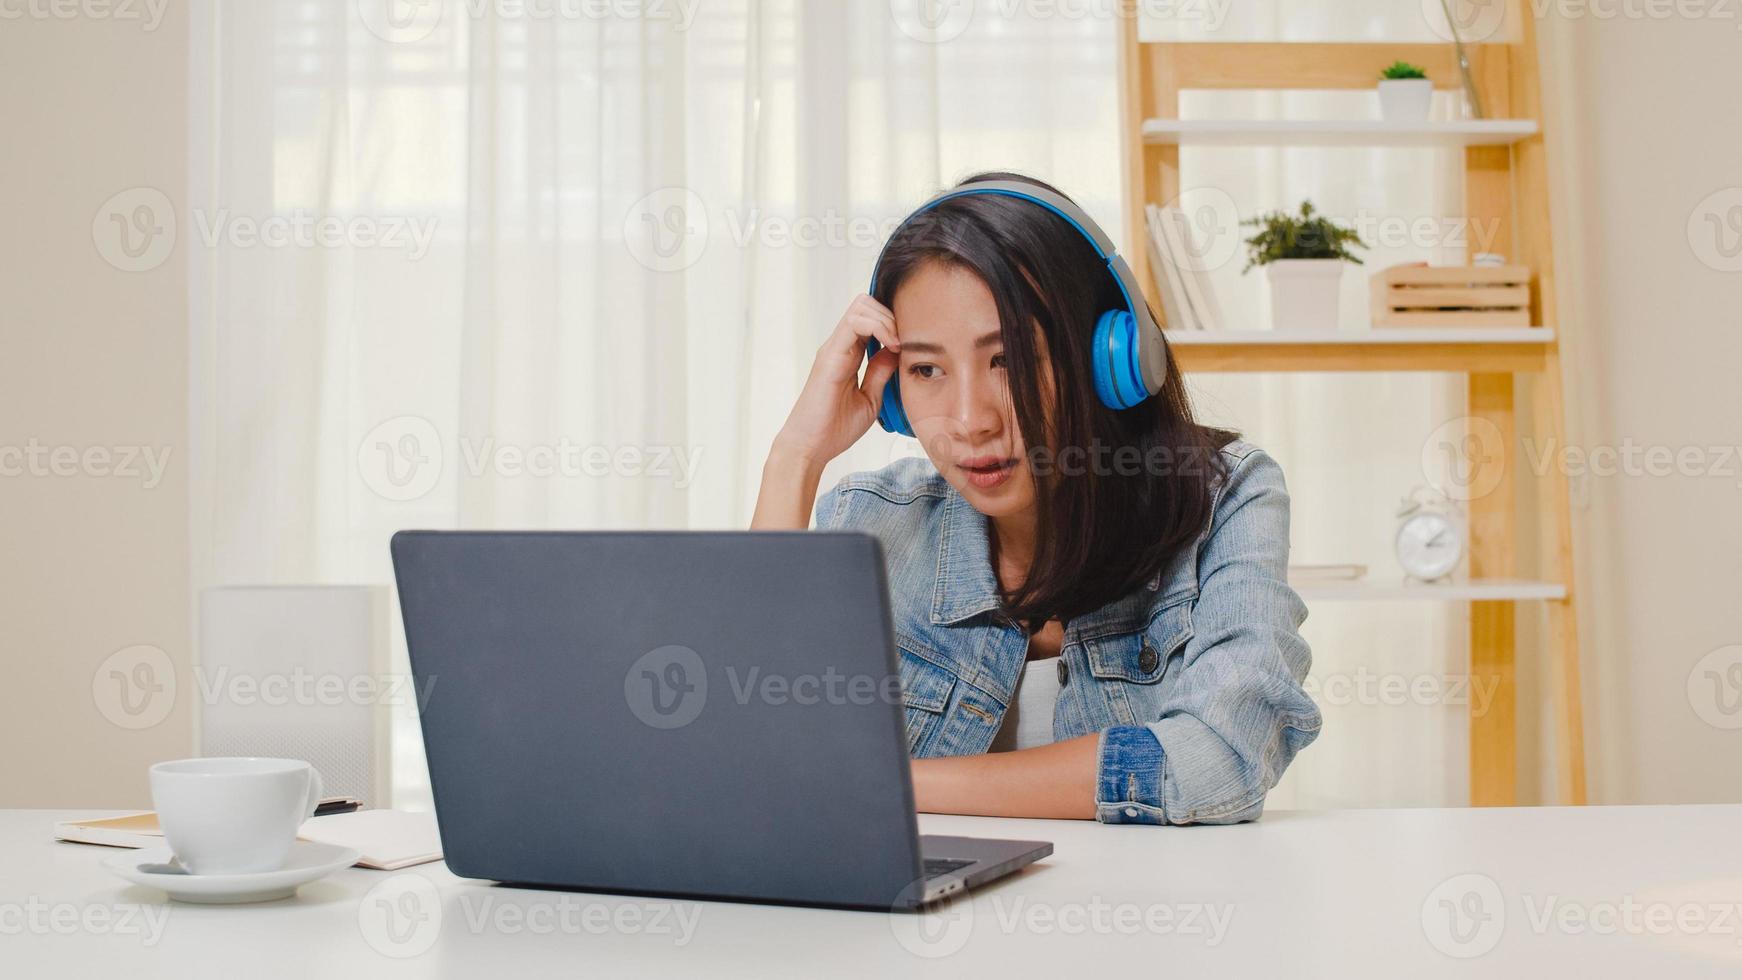 Roupa casual de mulheres de negócios freelance usando laptop trabalhando em videoconferência com cliente no local de trabalho, na sala de estar em casa. feliz jovem asiática relaxar sentado na mesa fazer um trabalho na internet. foto